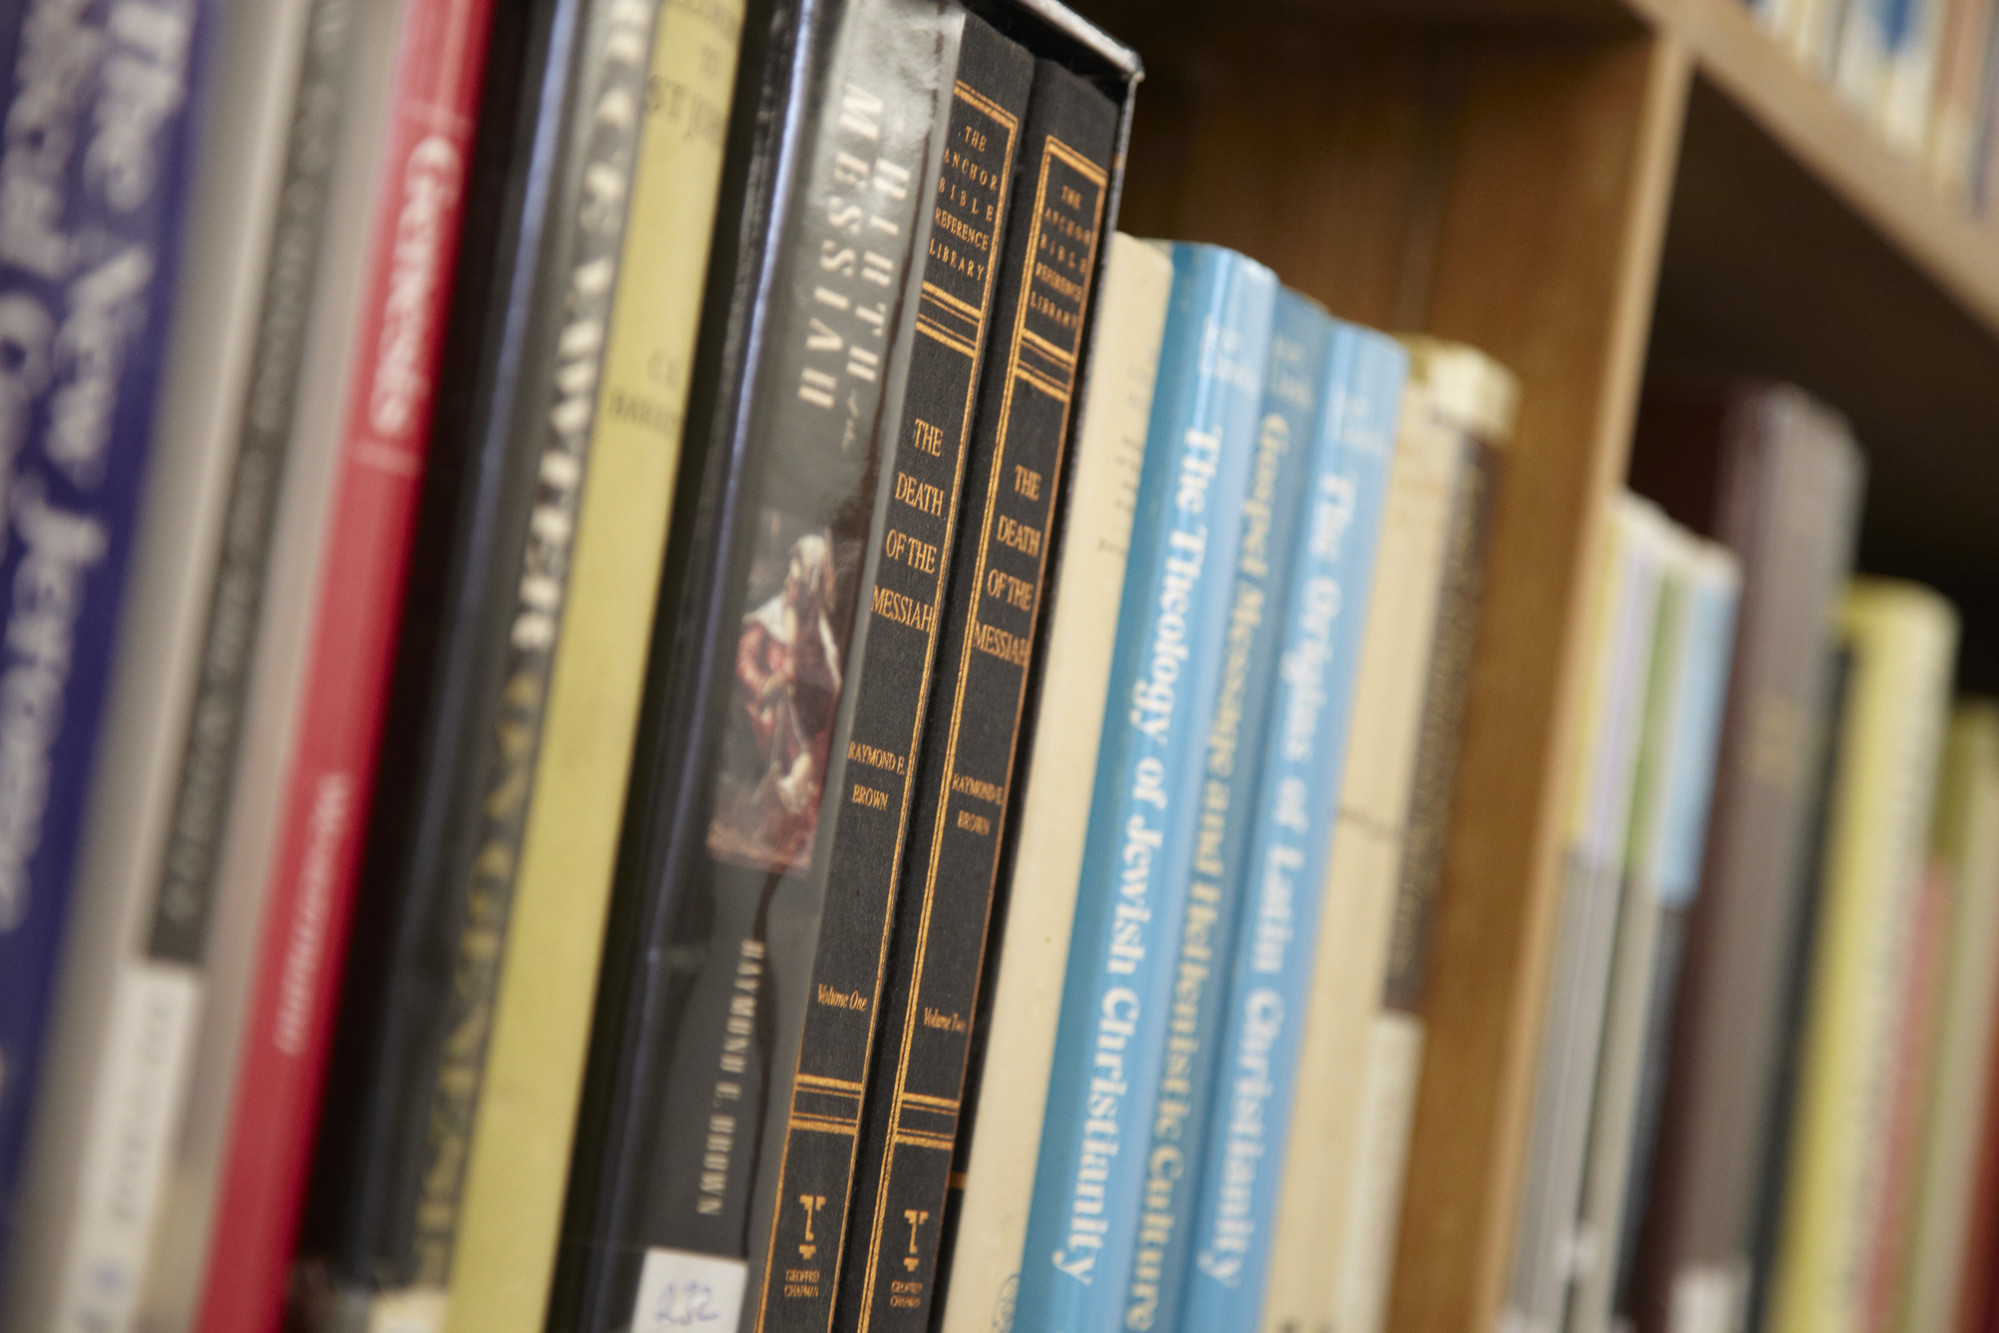 Theology books on a shelf close-up